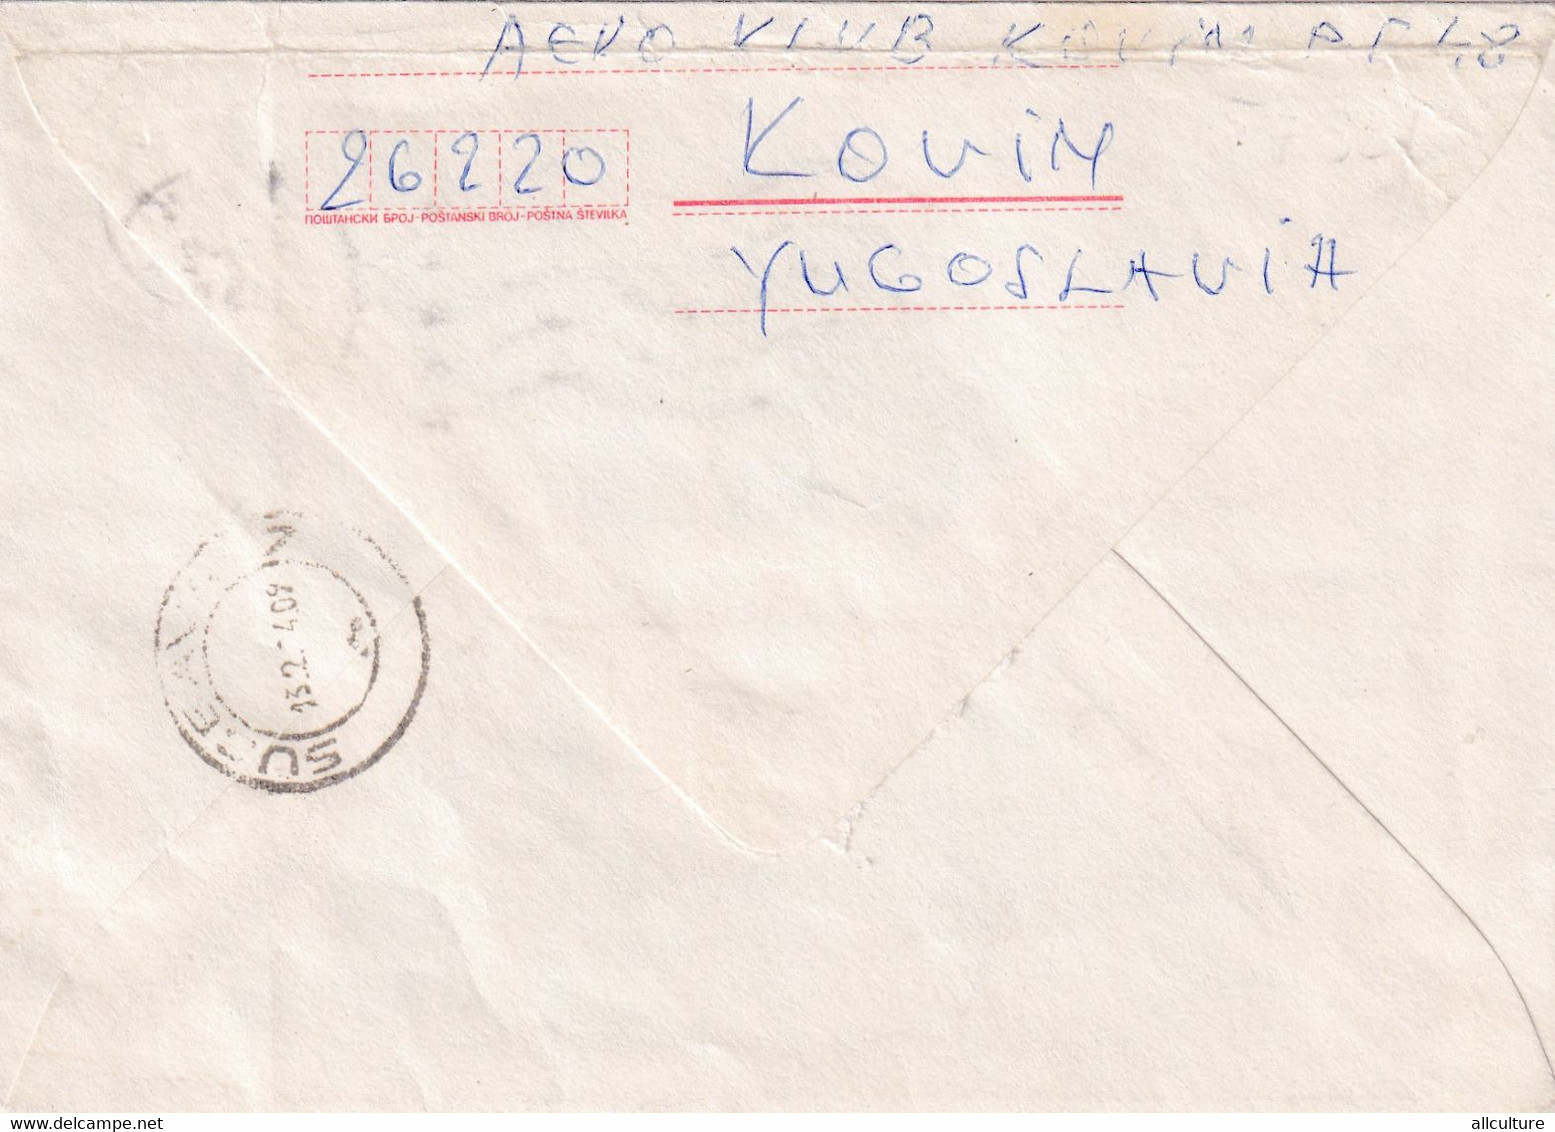 A2809-  Cover From Kovin 1984 Jugoslavia Slovakia , Postal Stationery To Suceava Romania 1984 - Sobres